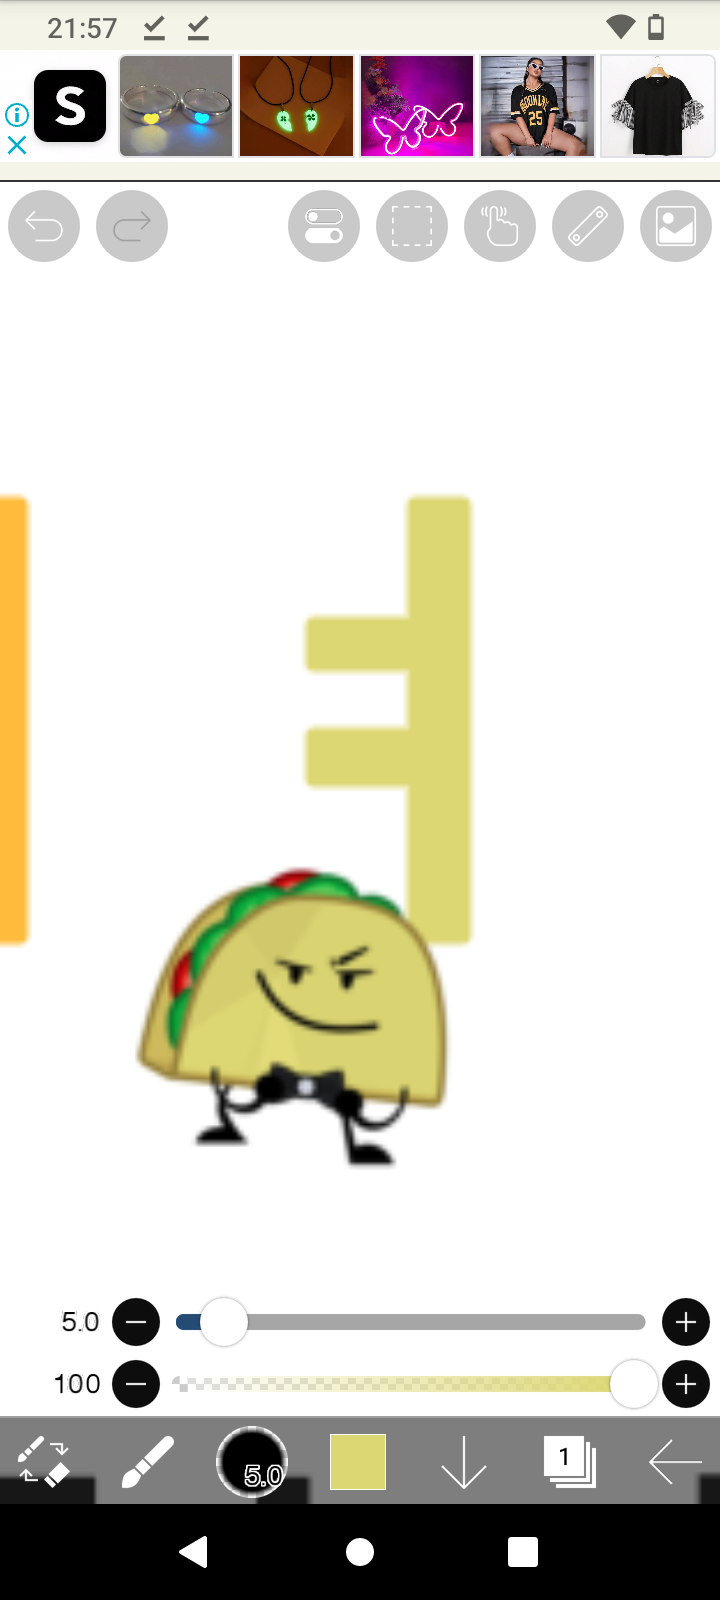 Korean alphabet man and woman by Matildasquirrel on DeviantArt